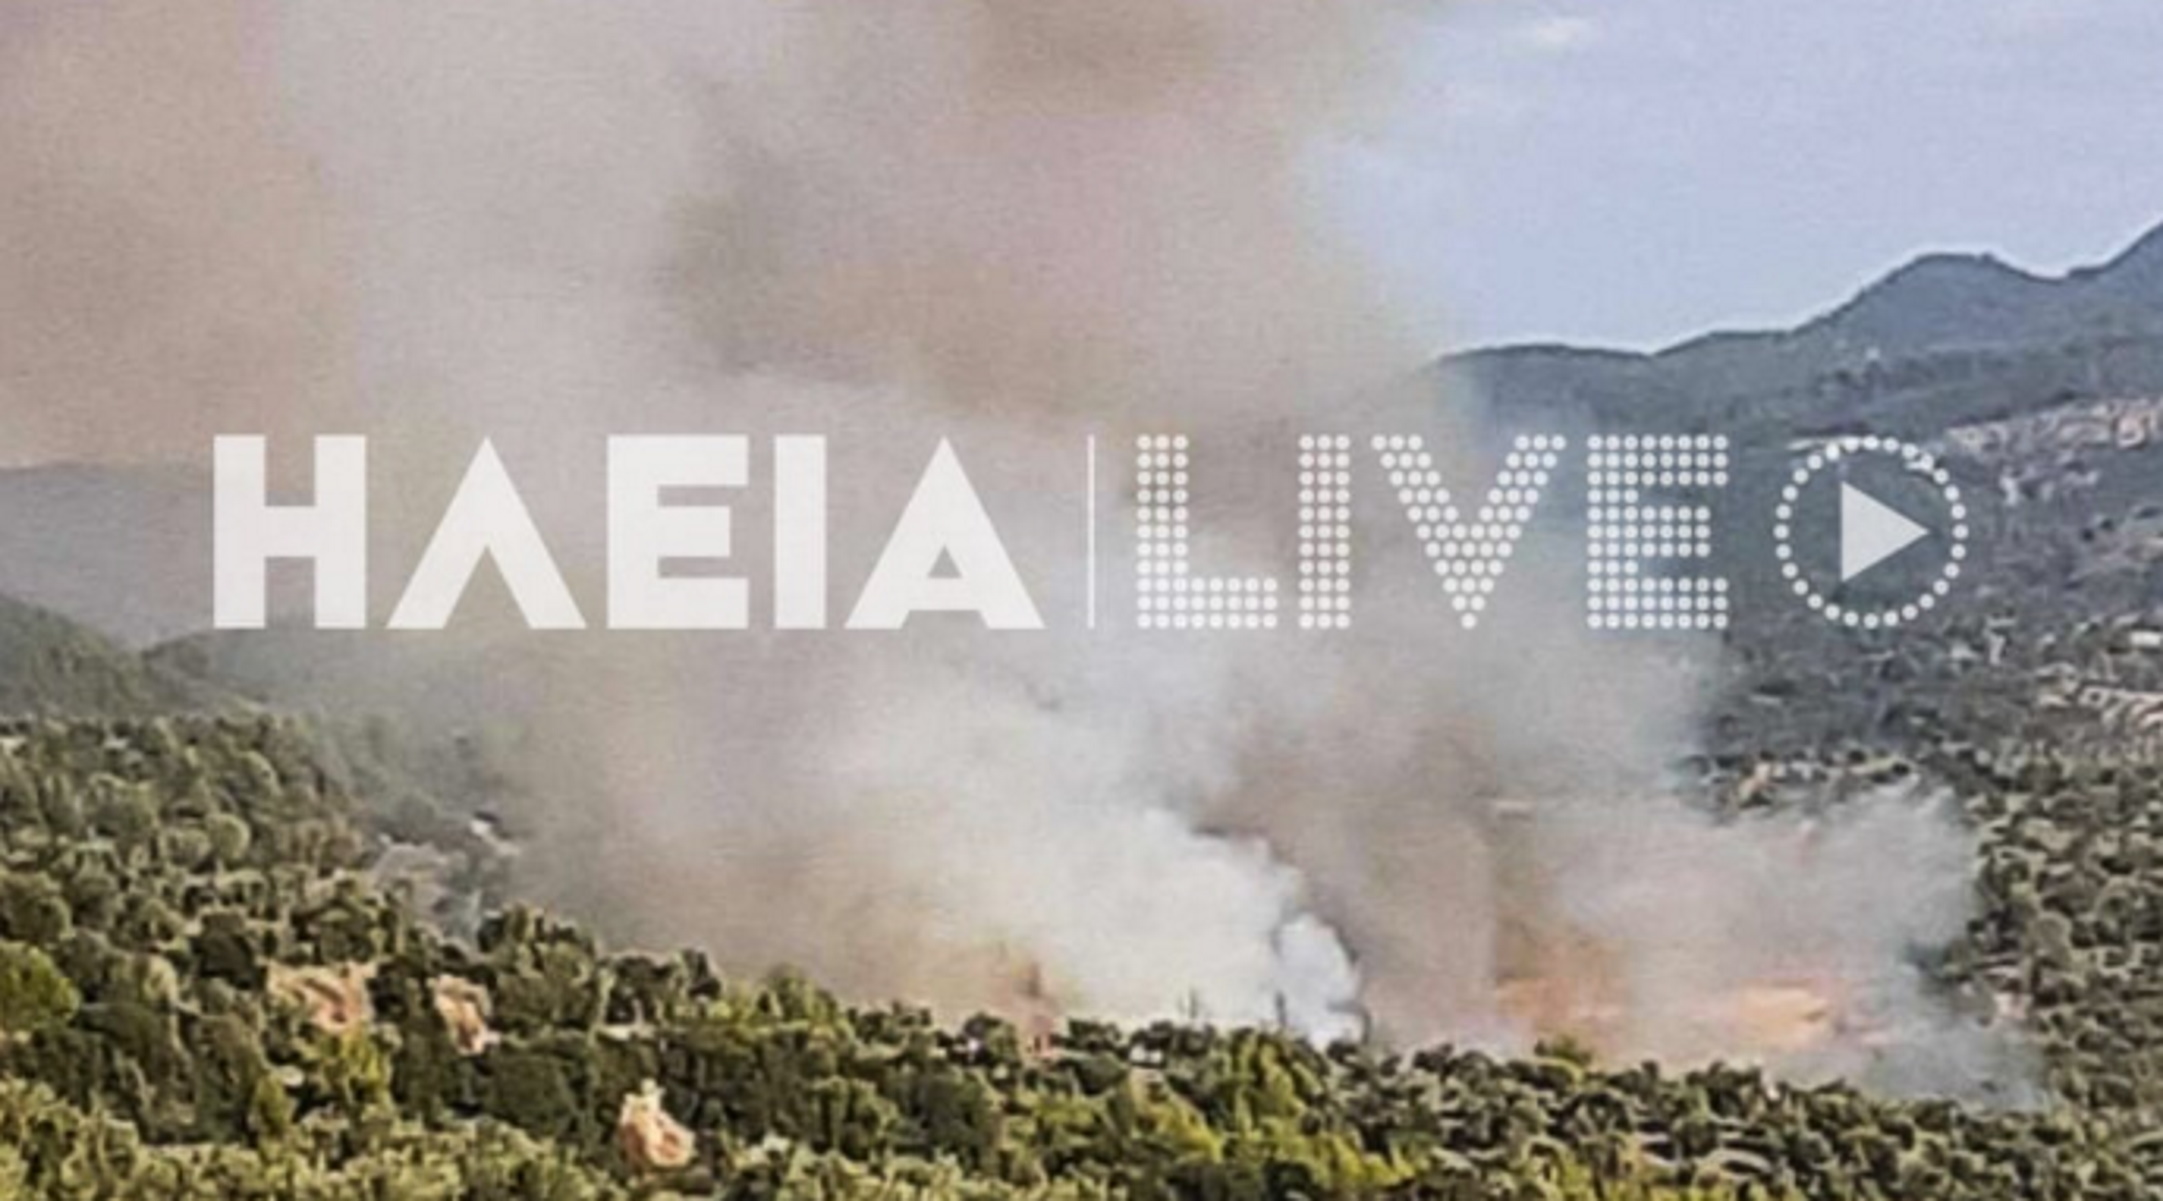 Φωτιά στη Ζαχάρω Ηλείας – Καίγονται ελιές και δάσος, ισχυρές δυνάμεις στην περιοχή